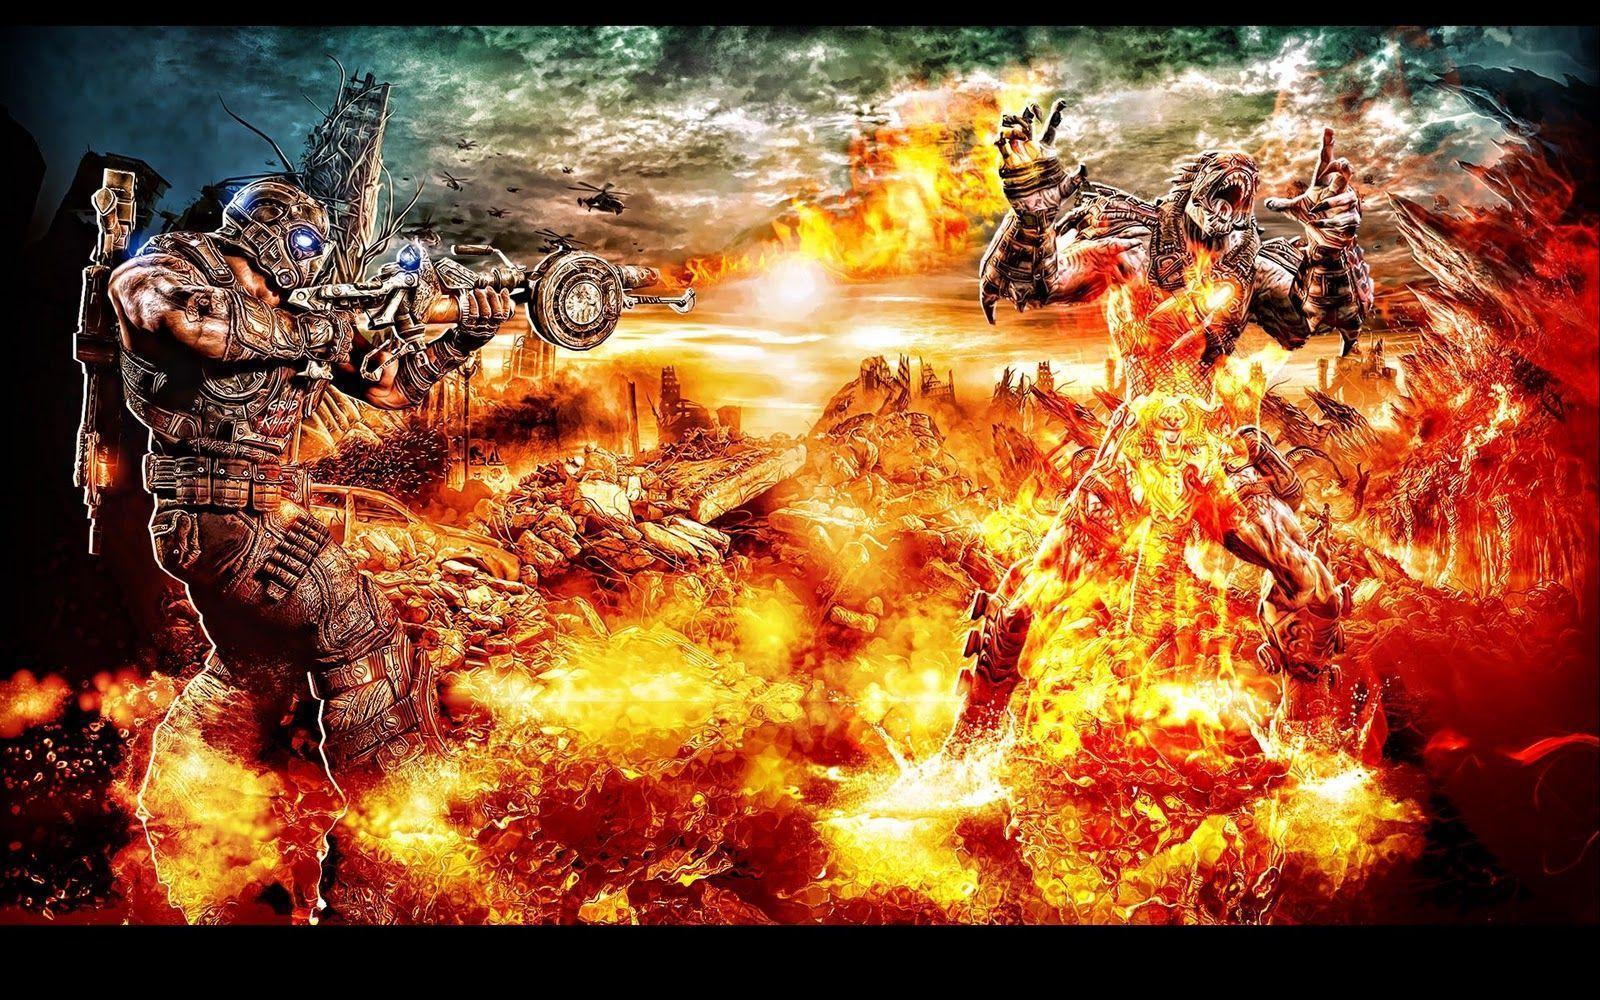 Gamer's Watch: A Badass Gears of War 3 Desktop Wallpaper